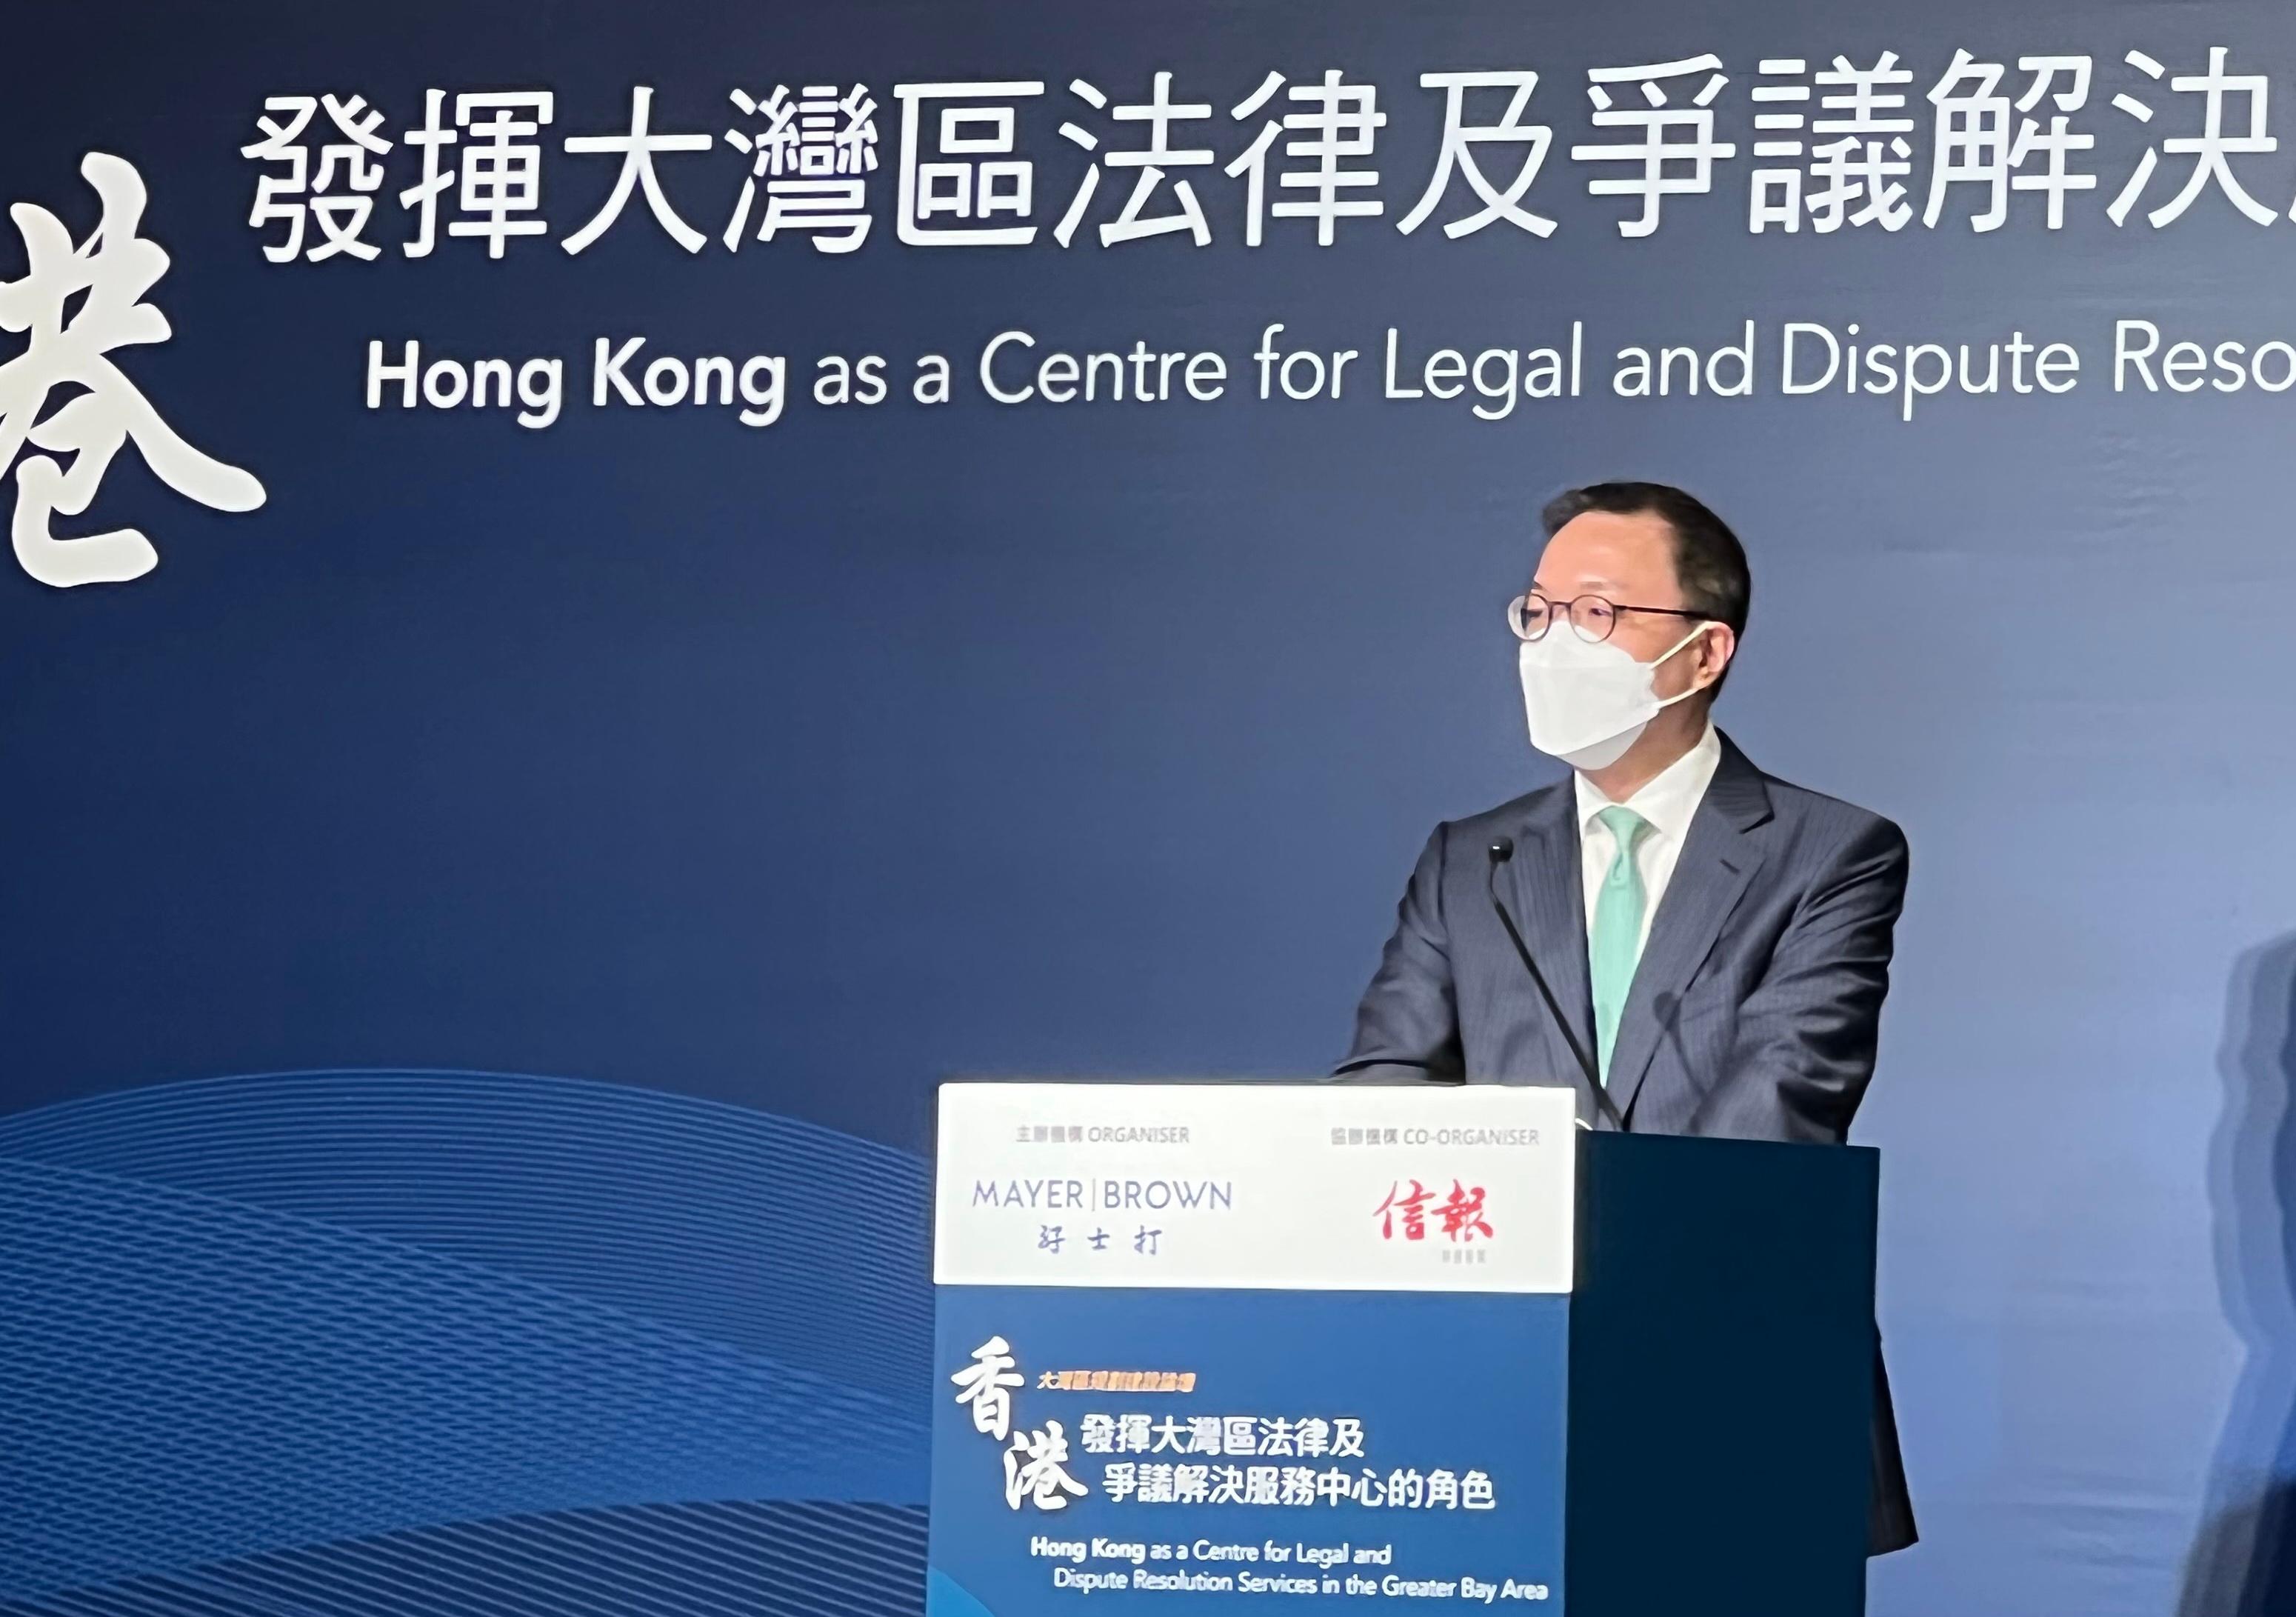 律政司司長林定國資深大律師今日（九月二十九日）在大灣區規劃建設論壇「香港發揮大灣區法律及爭議解決服務中心的角色」致辭。
